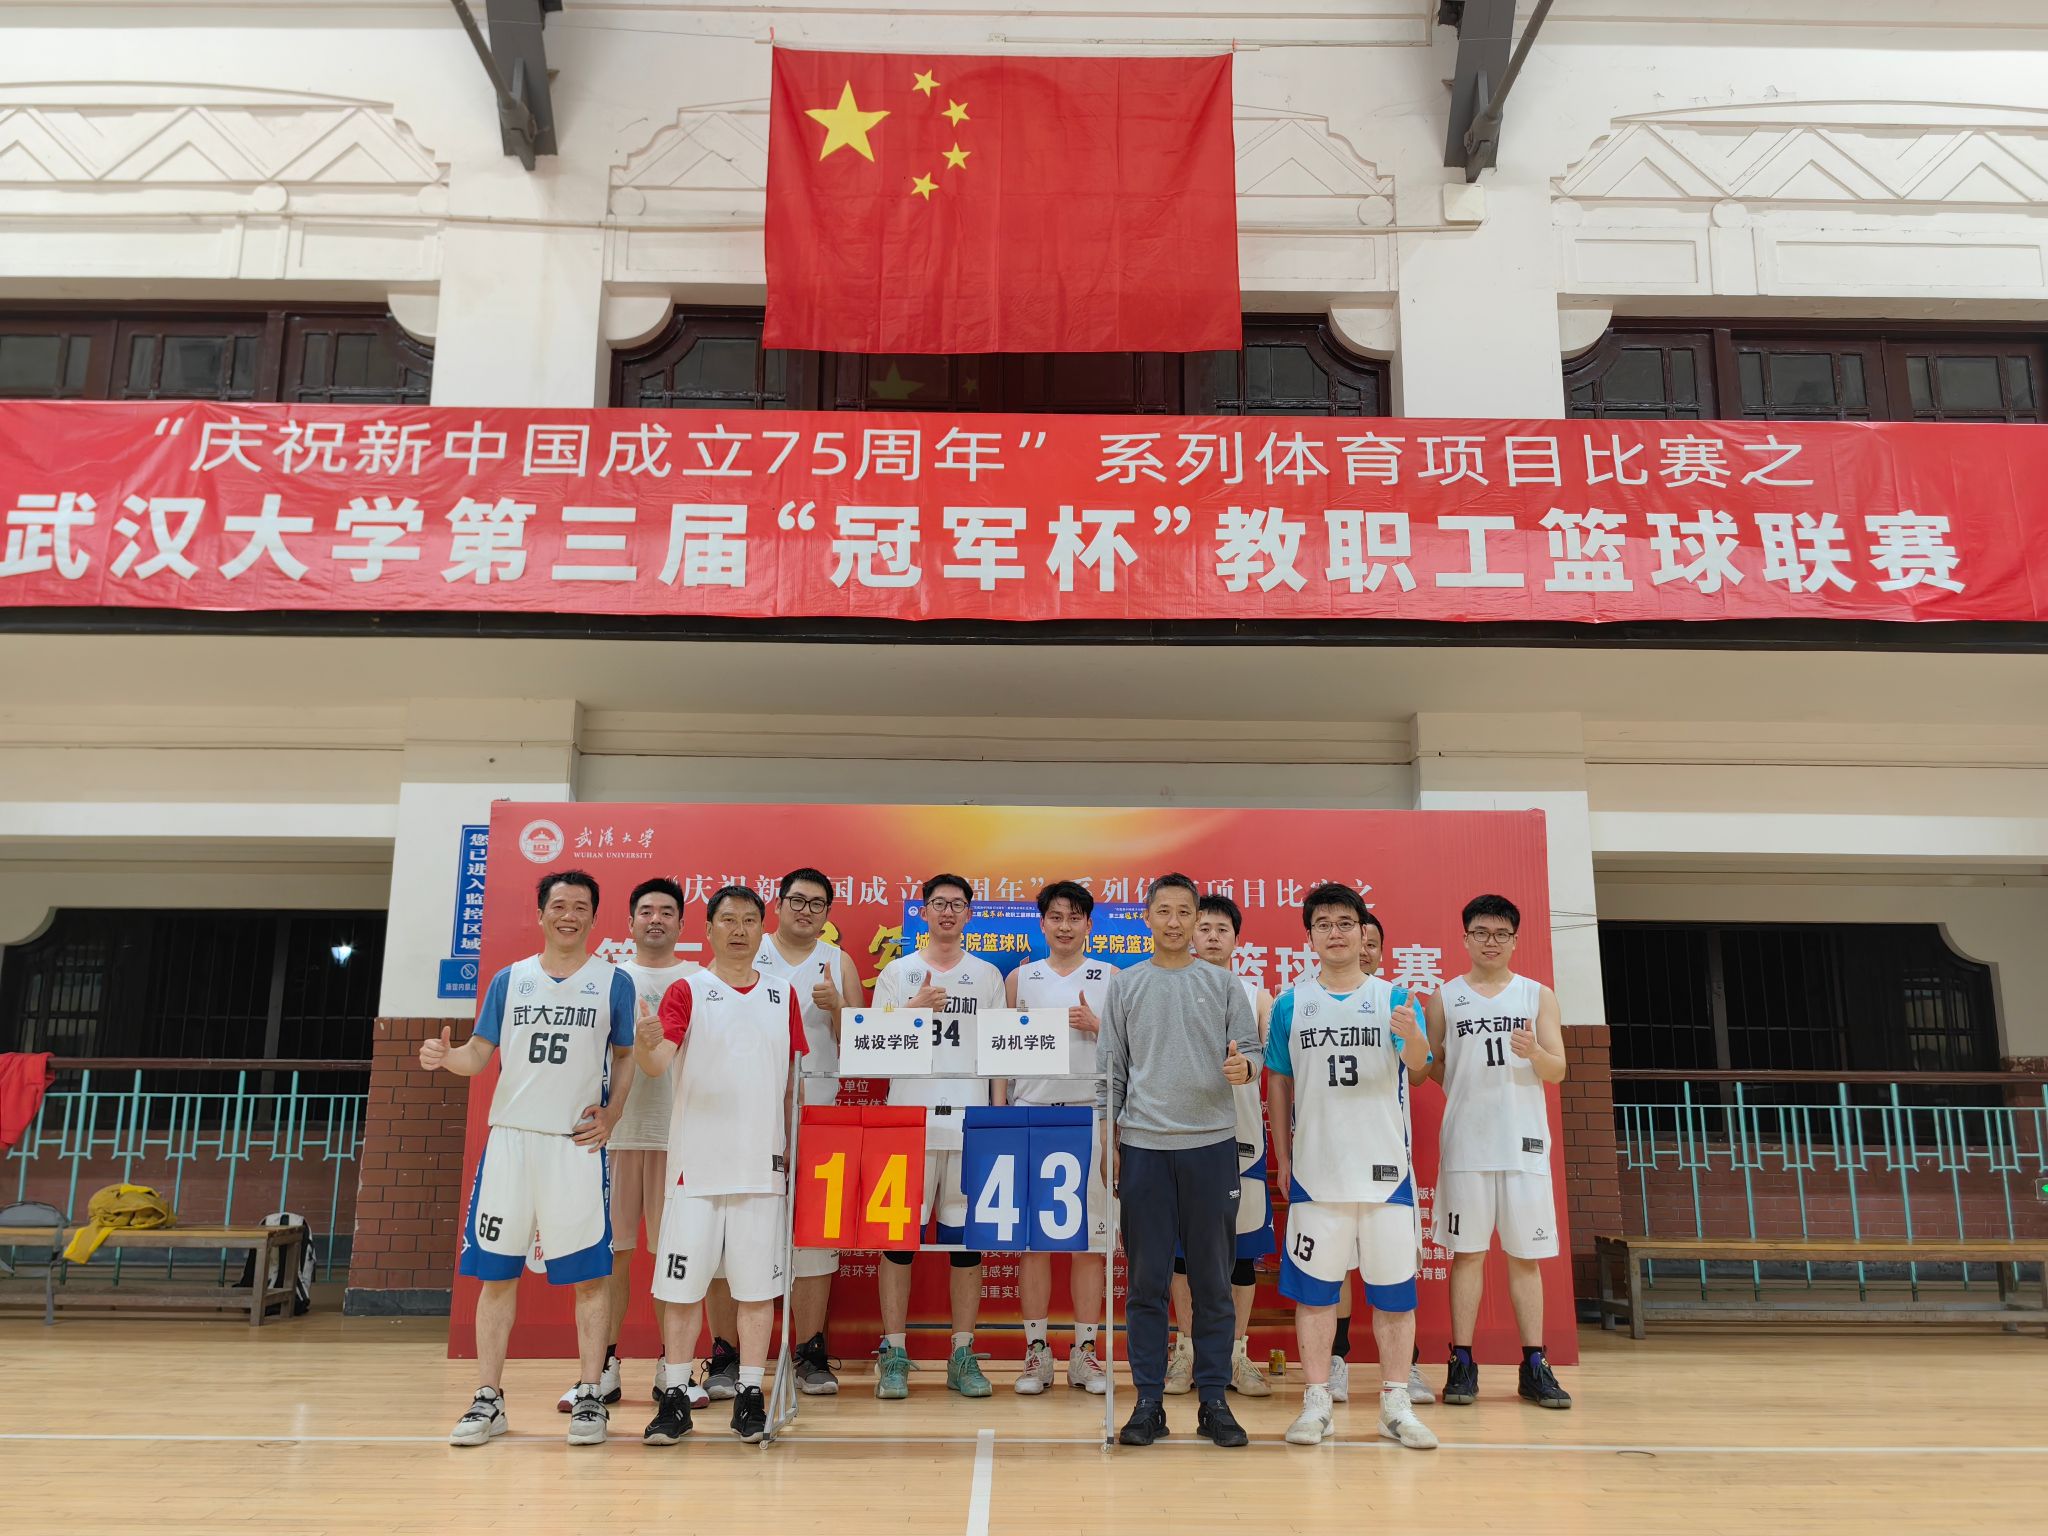 动力与机械学院获得第三届冠军杯教职工篮球赛 工学杯冠军